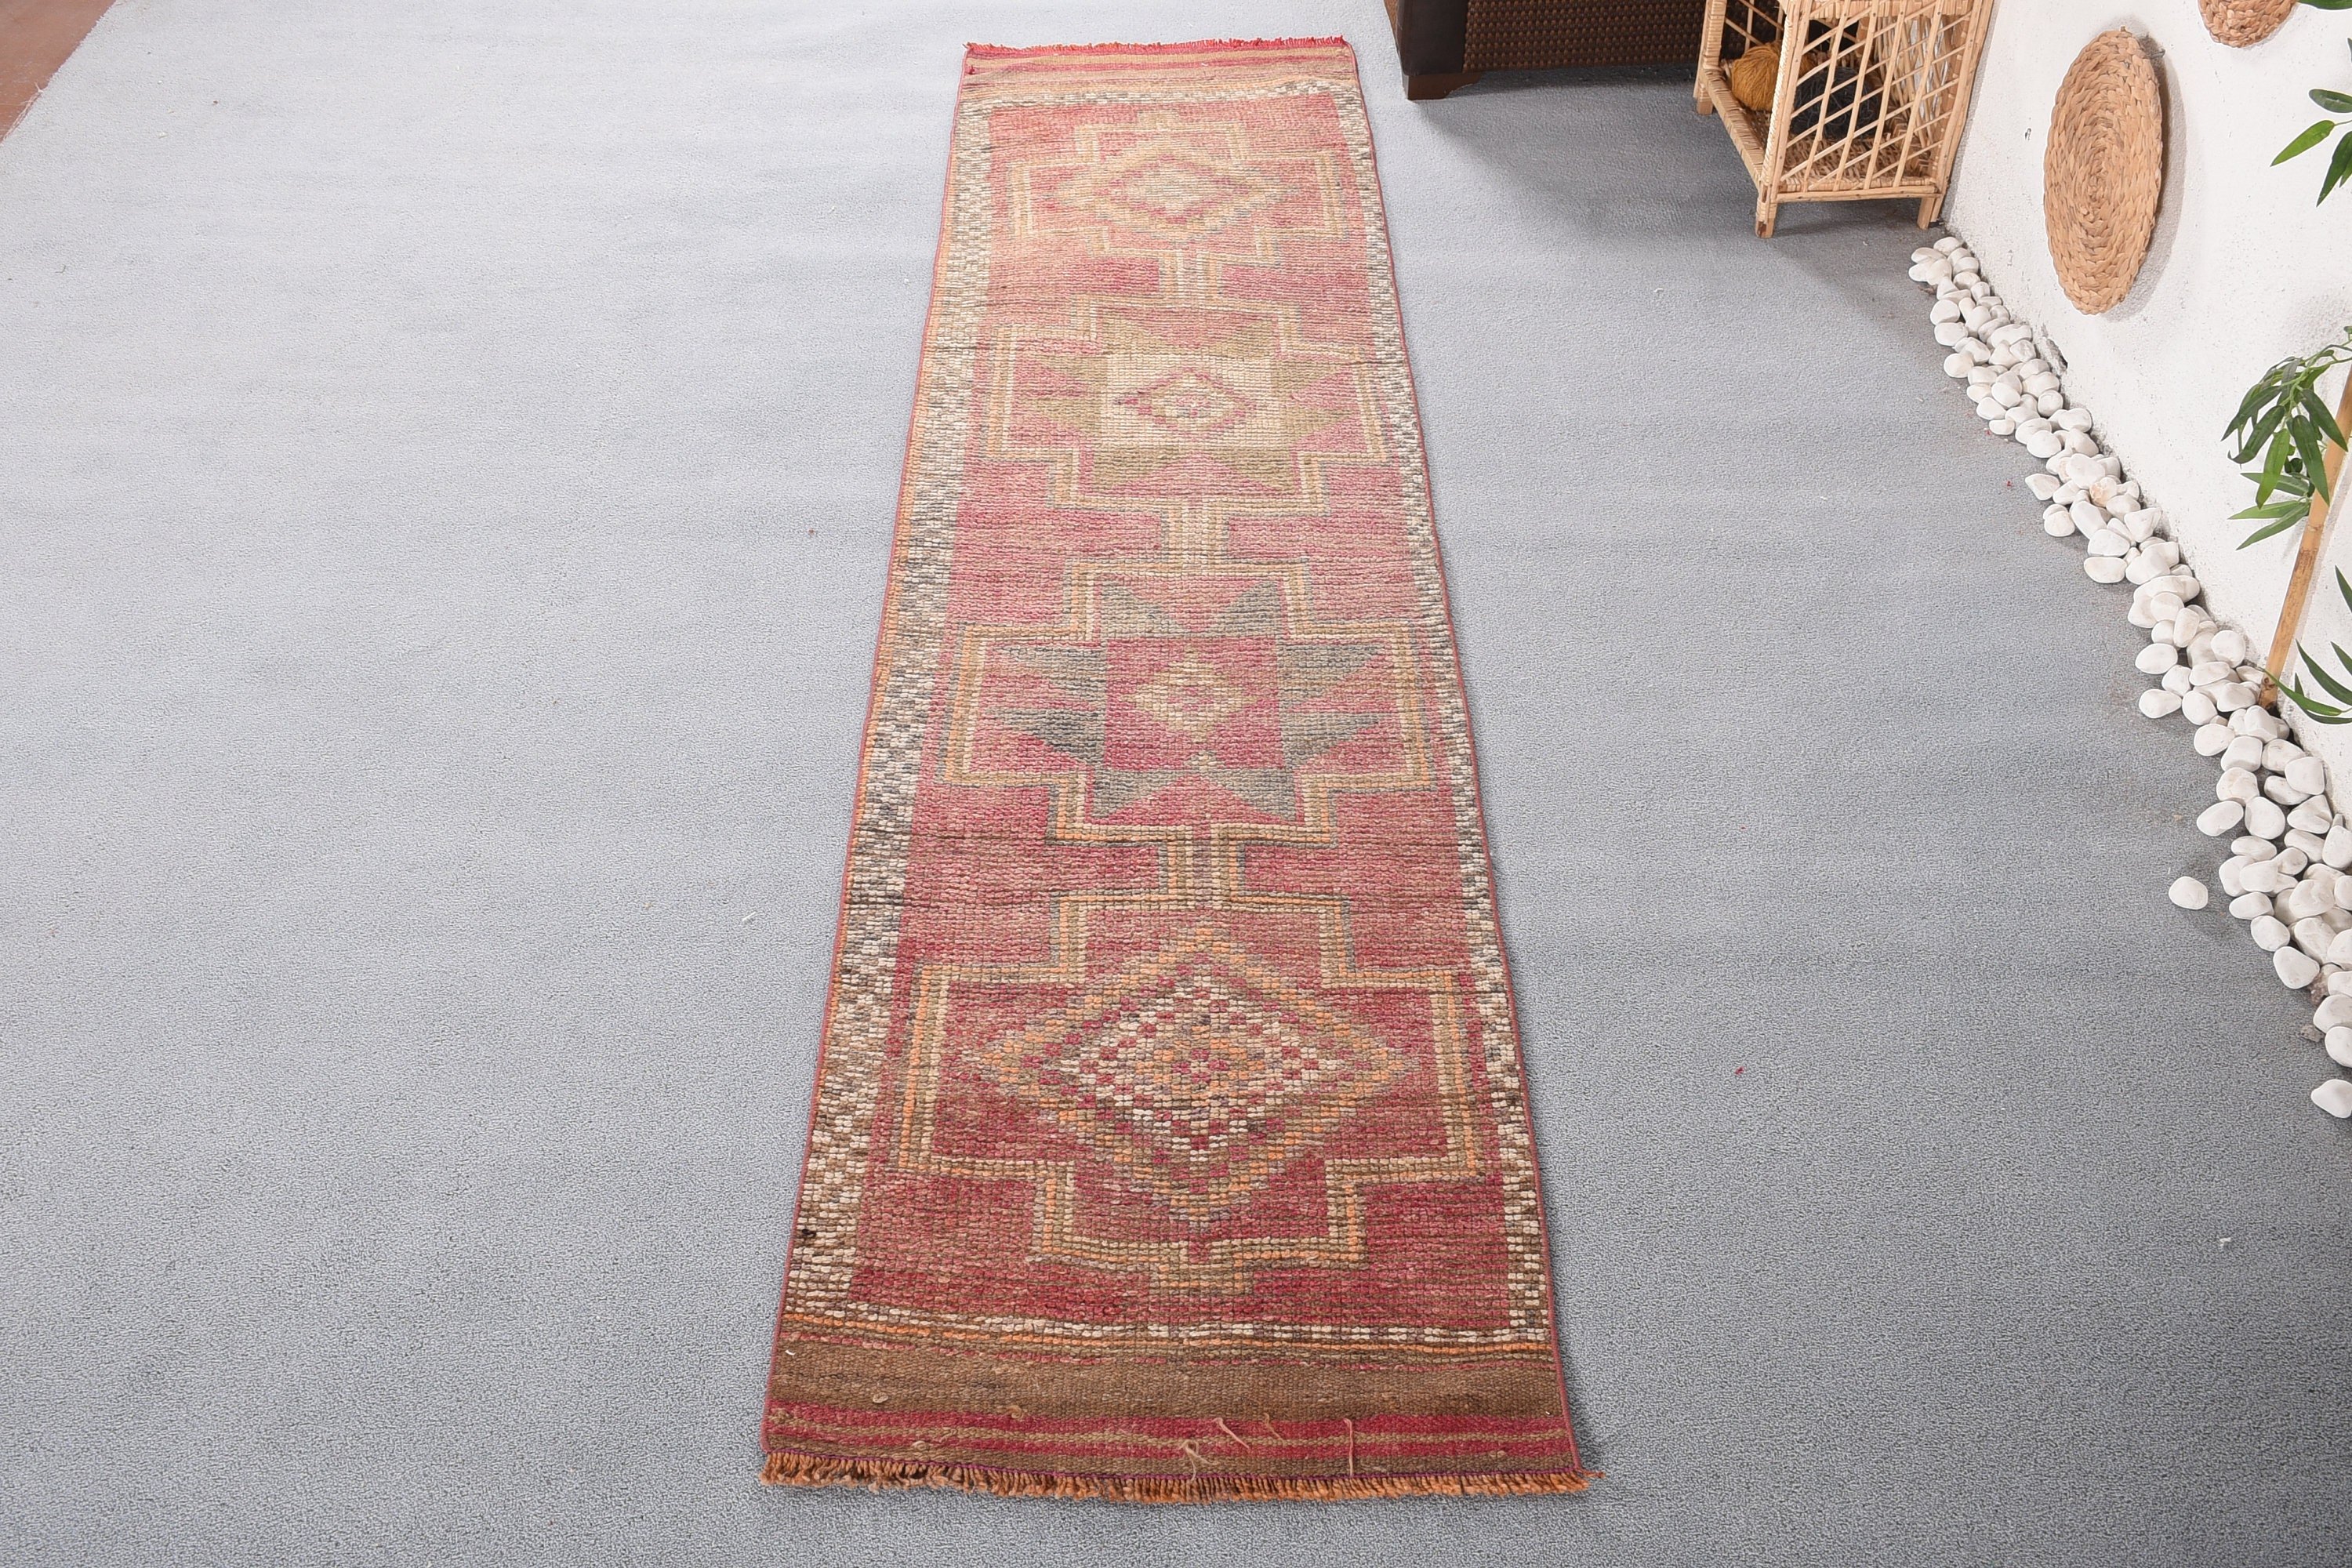 Old Rug, Vintage Rug, Stair Rugs, Turkish Rug, 2.4x10.2 ft Runner Rug, Kitchen Rugs, Red Oriental Rug, Rugs for Hallway